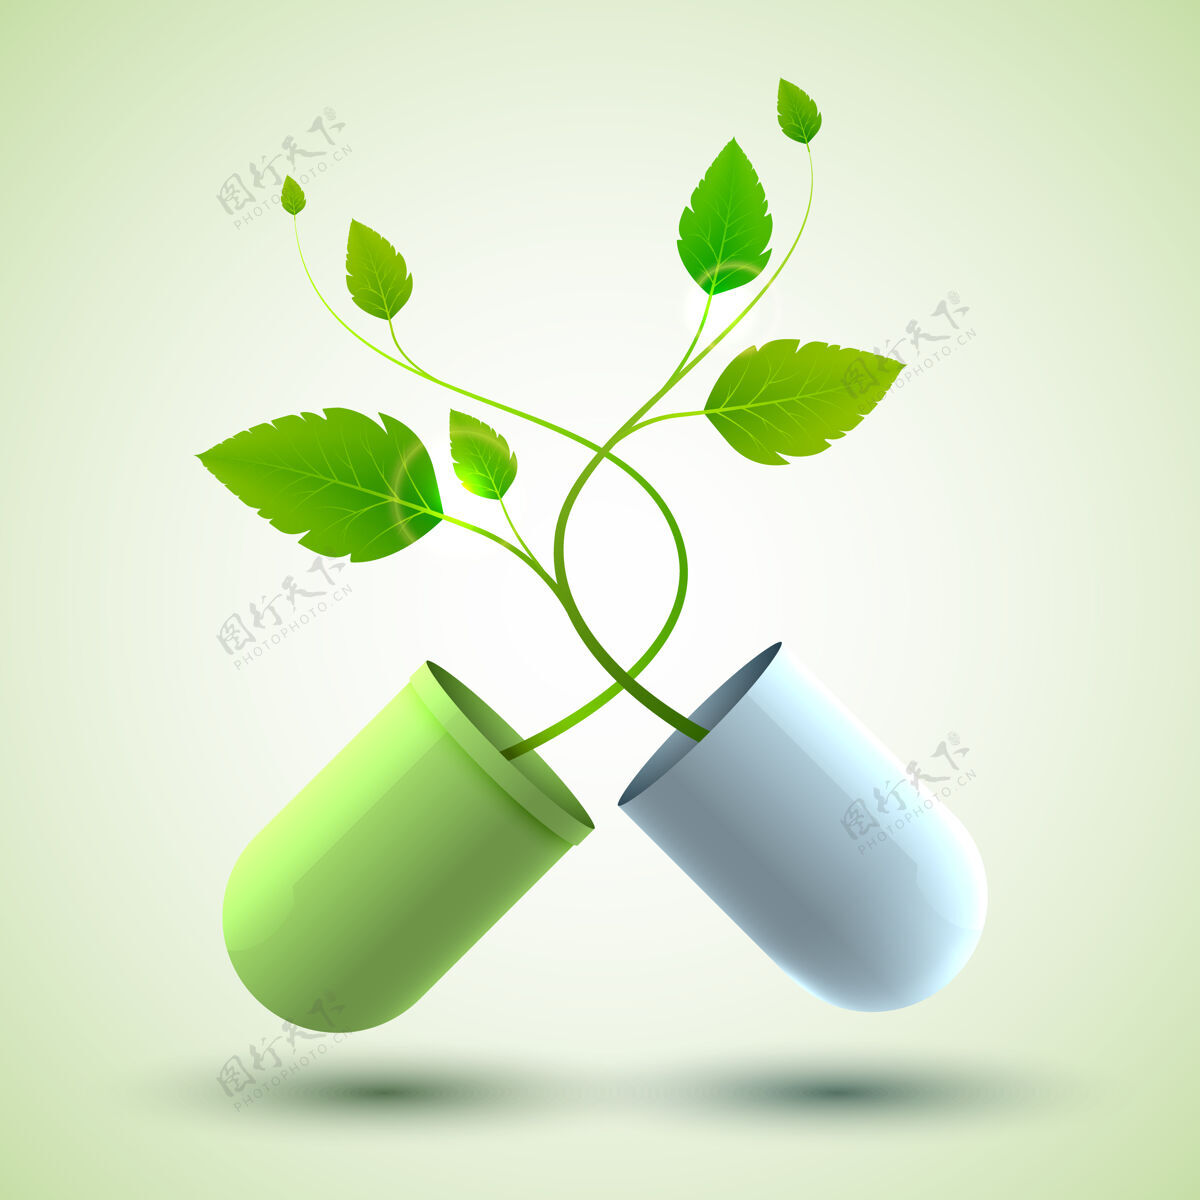 医药医学设计海报与原来的药用胶囊组成的绿色和蓝色的部分和叶子作为生命的象征插图胶囊传单套装